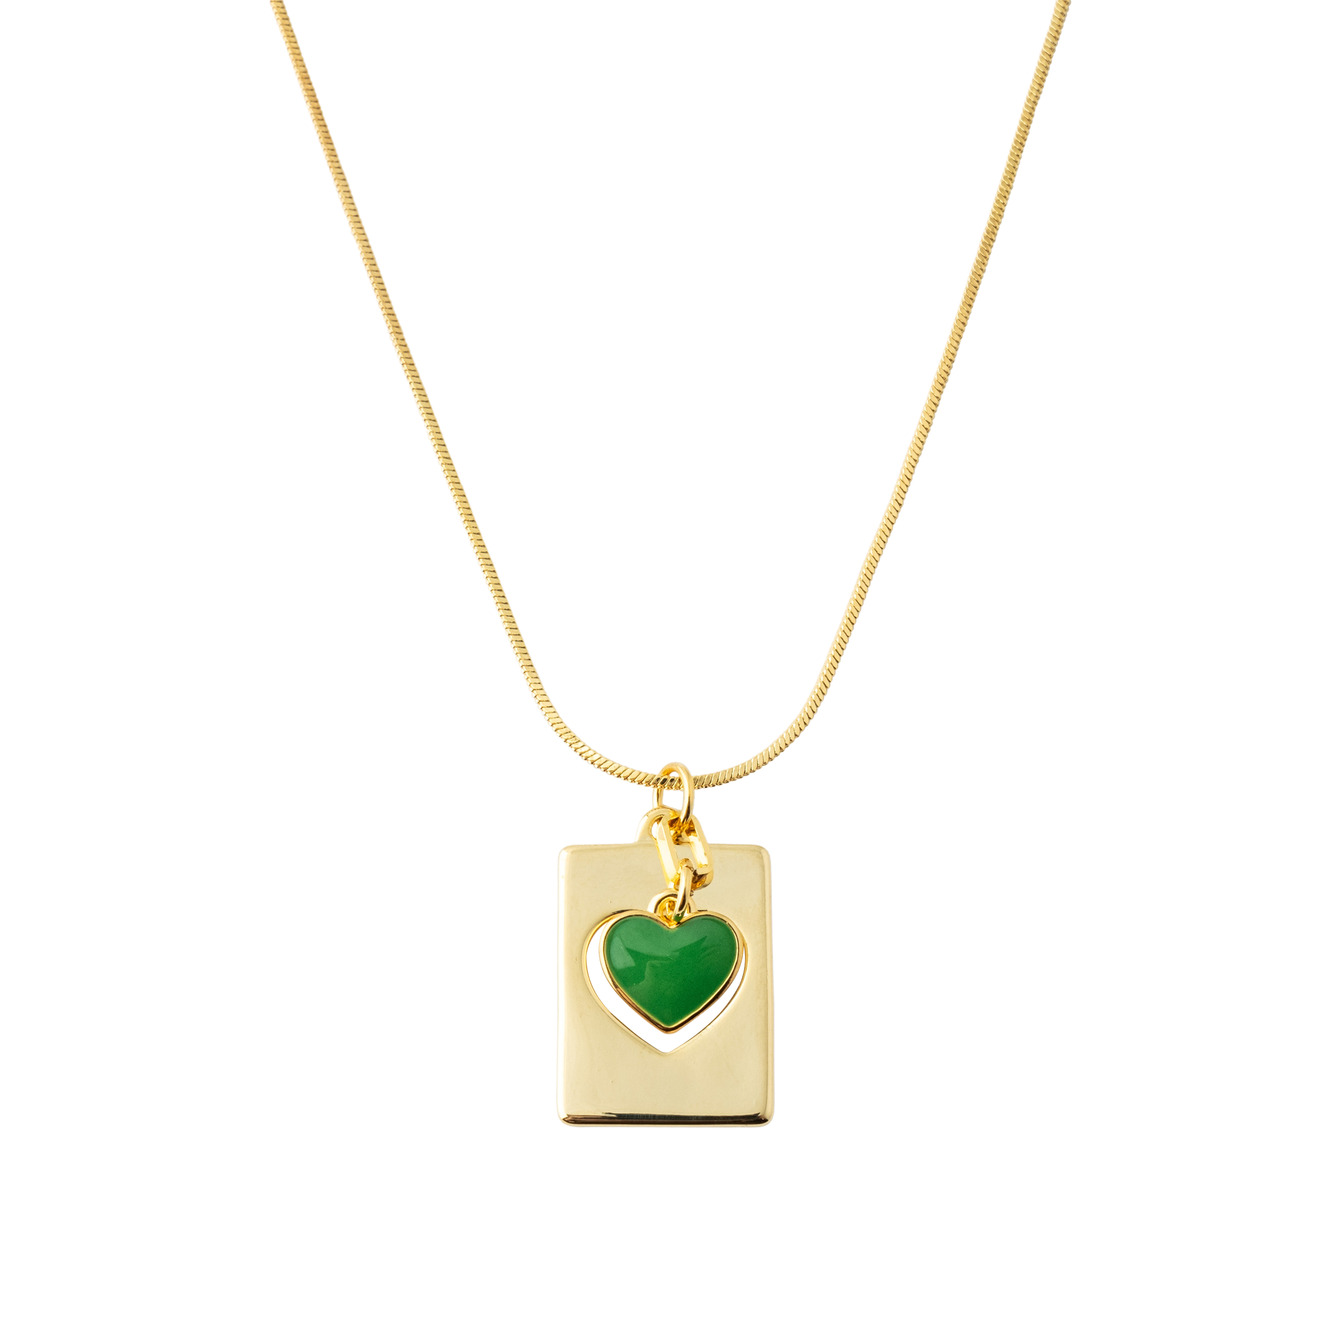 Aqua Золотистая подвеска с зеленым сердцем aqua серебристое кольцо с зеленым сердцем